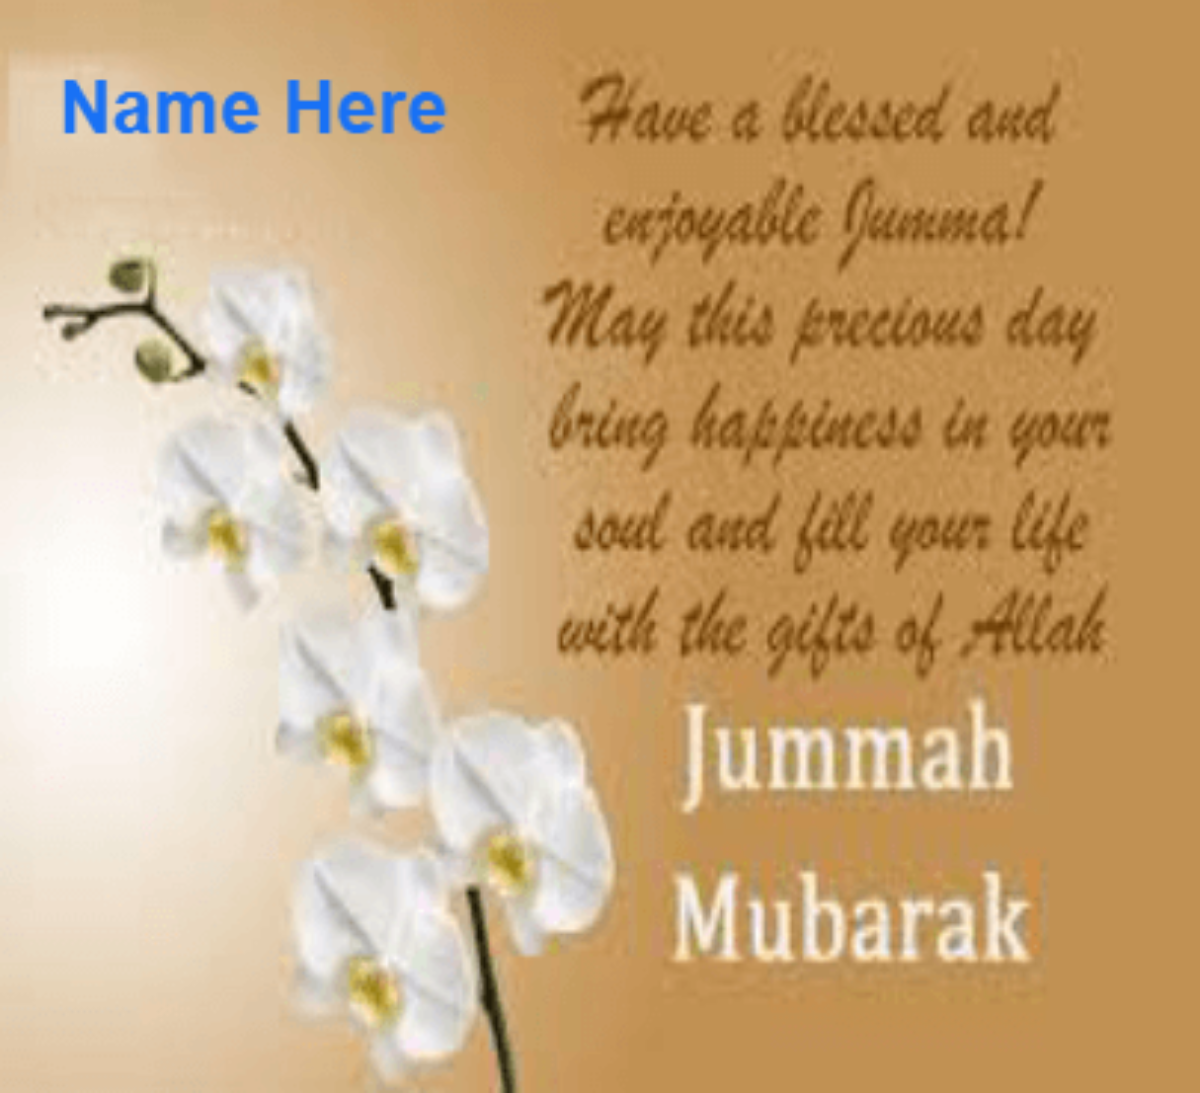 jumma Mubarak Wishes - Juma Mubarak Images With Name